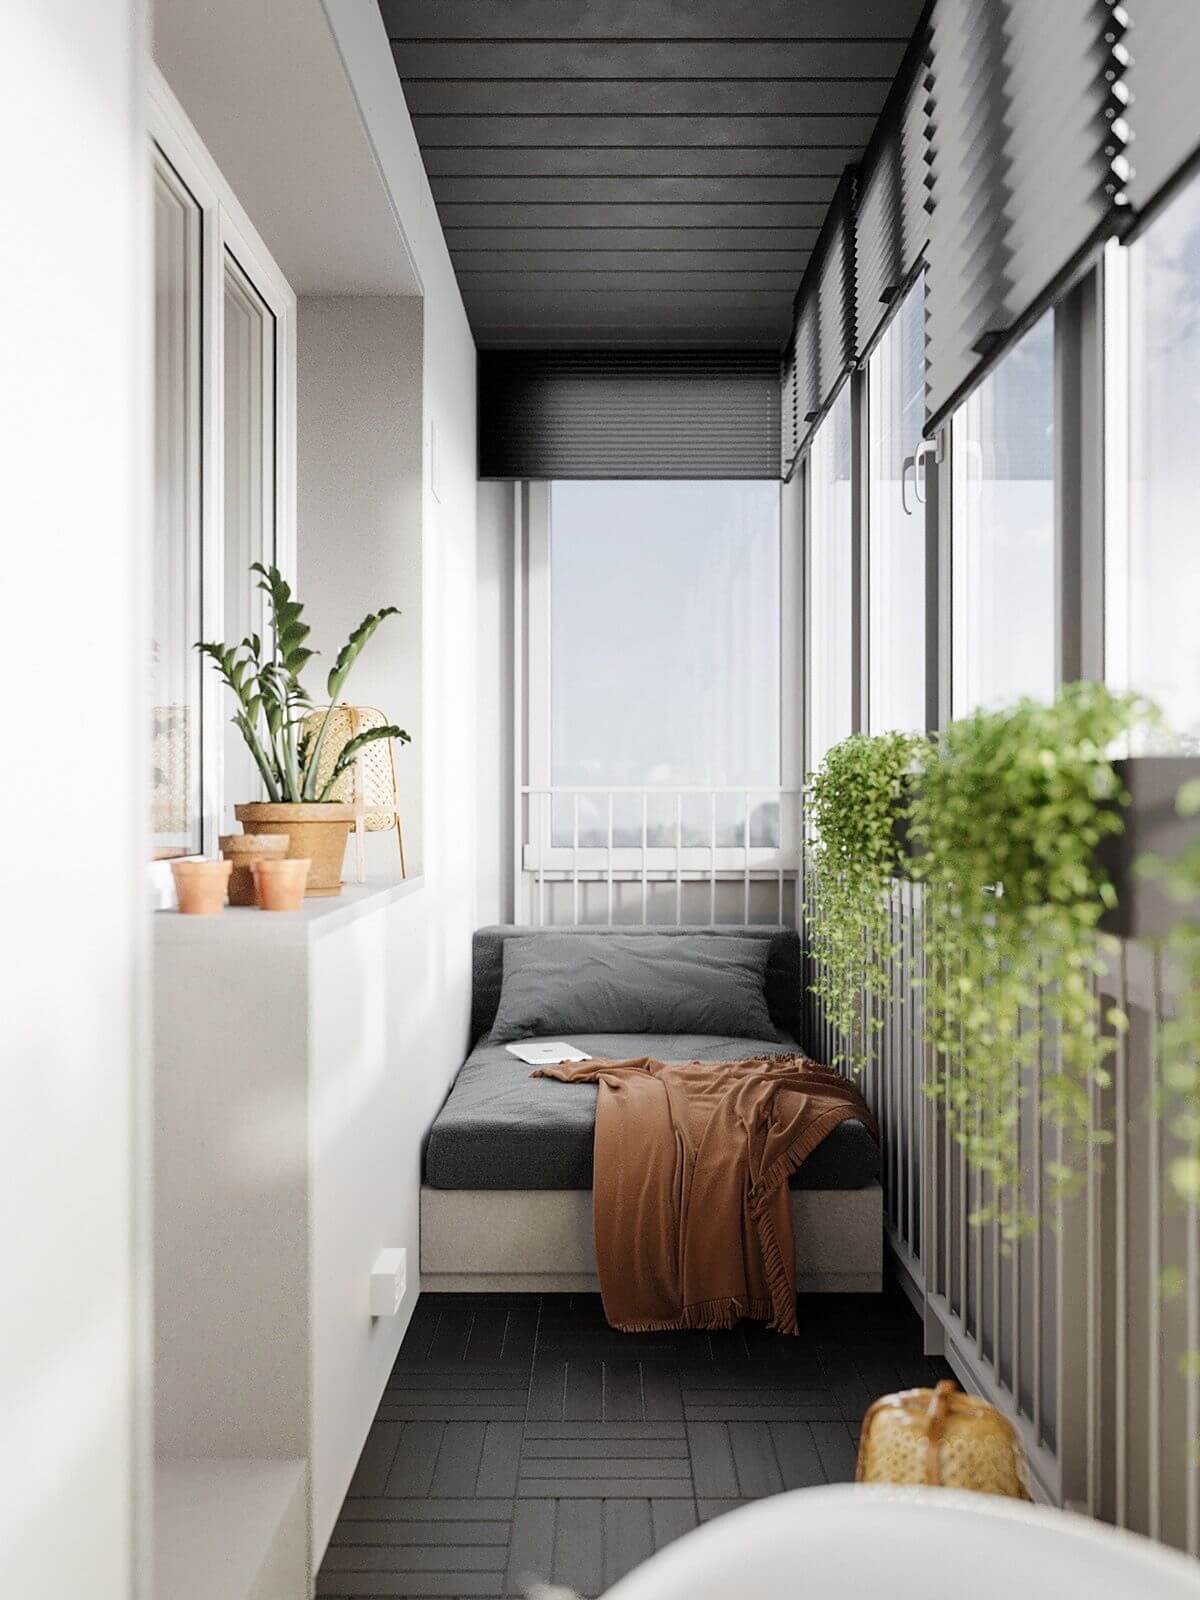 уникальный дизайн в стиле минимализм балкона